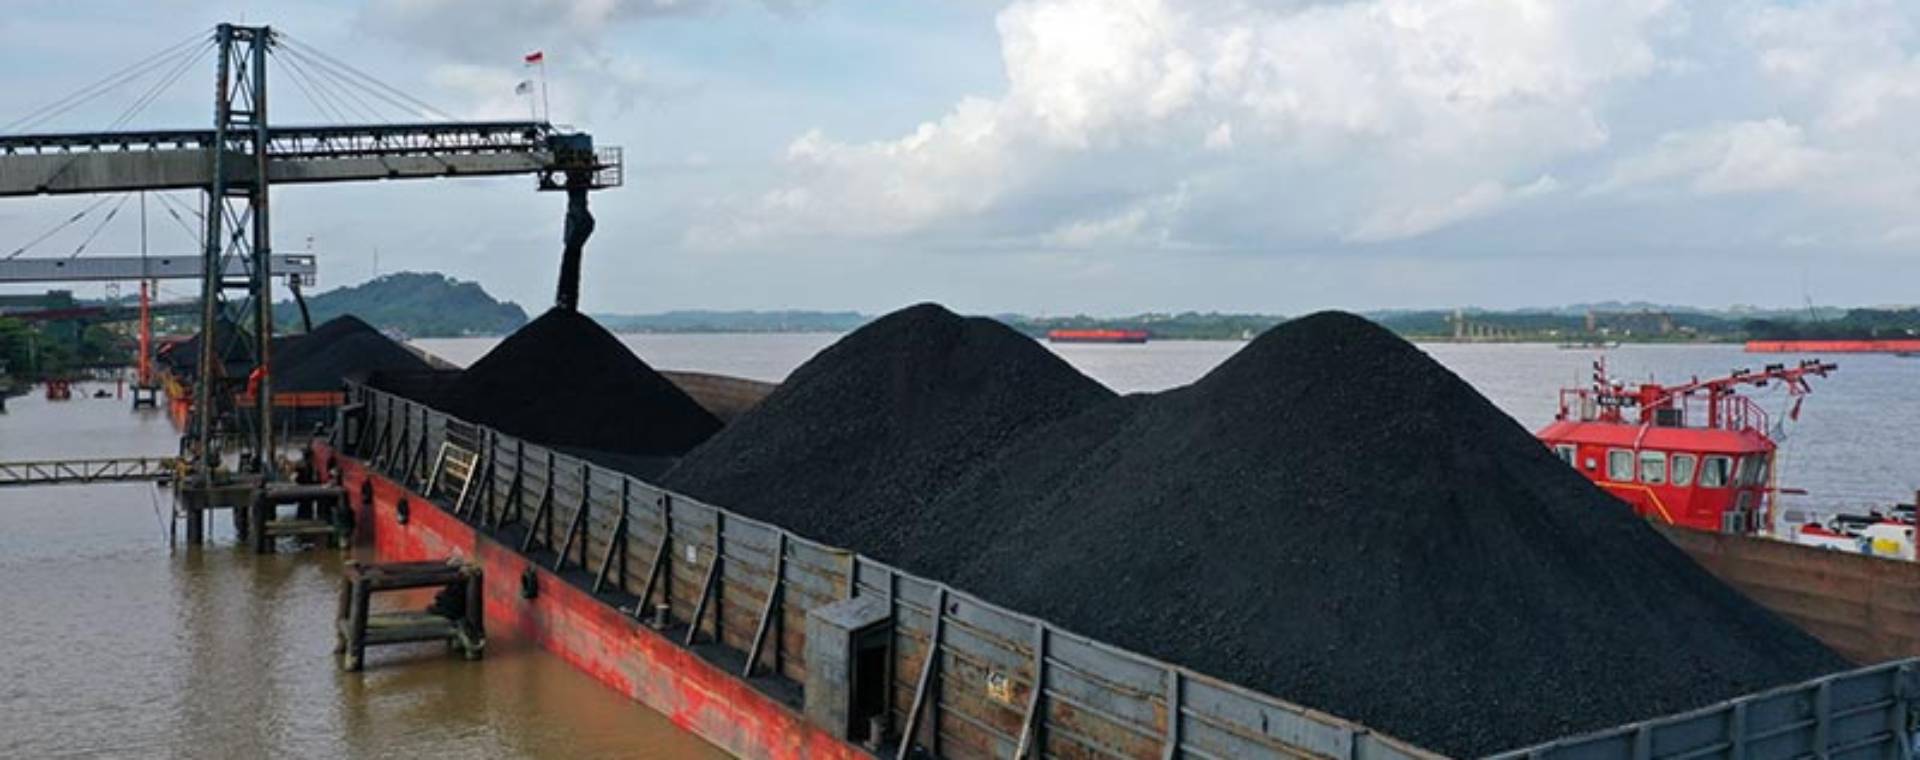 Proses pemuatan batu bara ke tongkang di Kutai Kartanegara, Kalimantan Timur, Rabu (13/10/2021). Bloomberg - Dimas Ardian